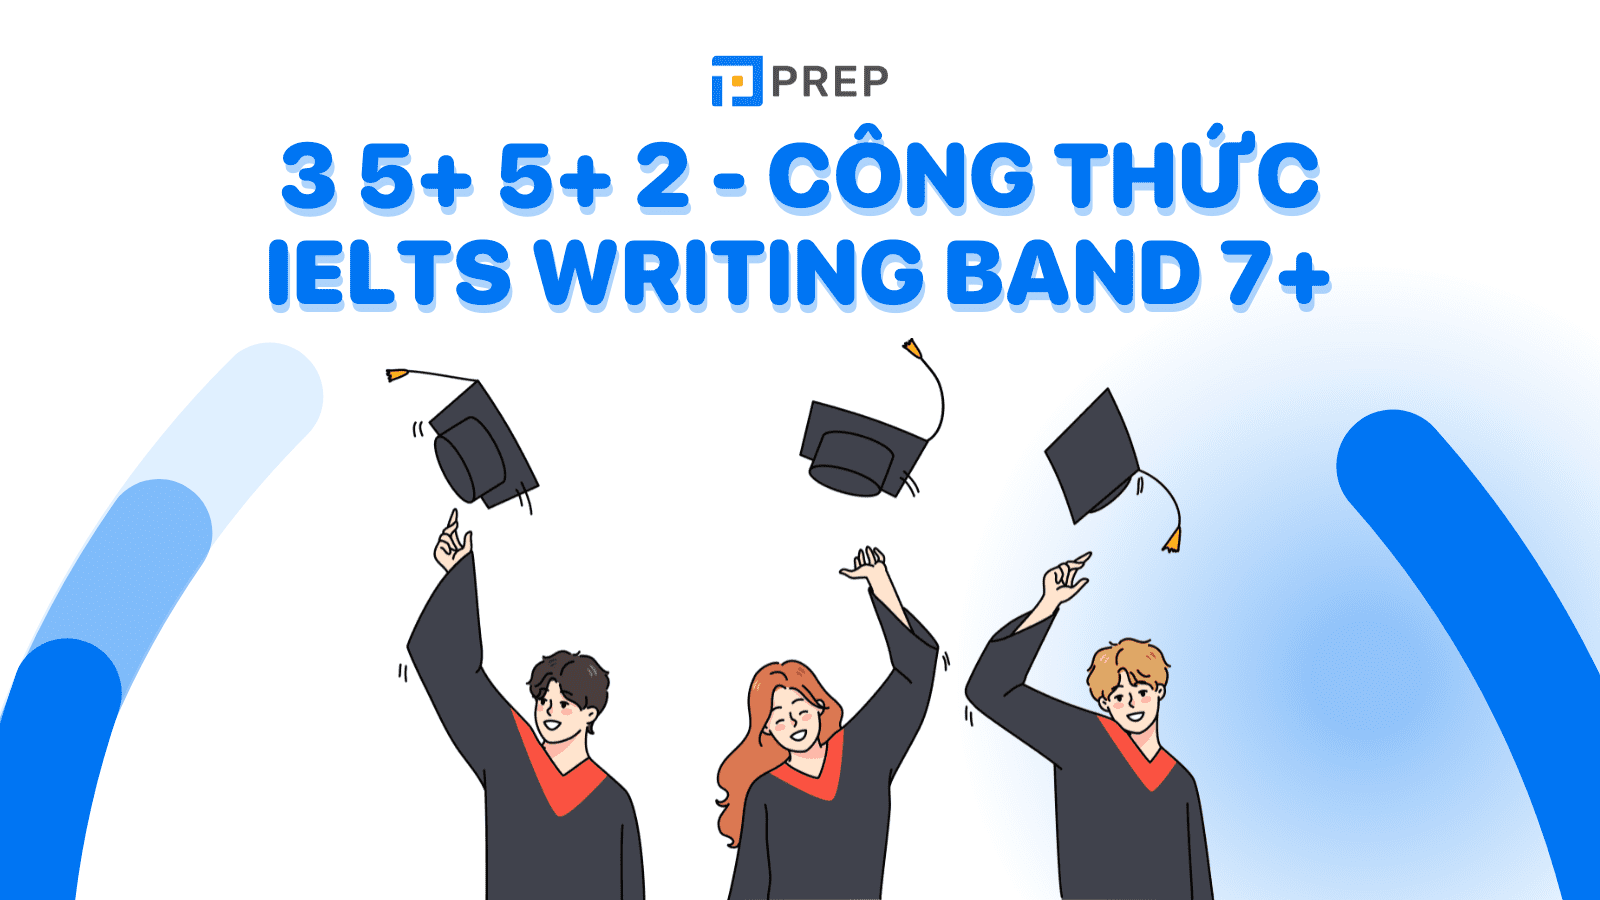 3 5+ 5+ 2 - Công thức hoàn hảo cho IELTS Writing Band 7+